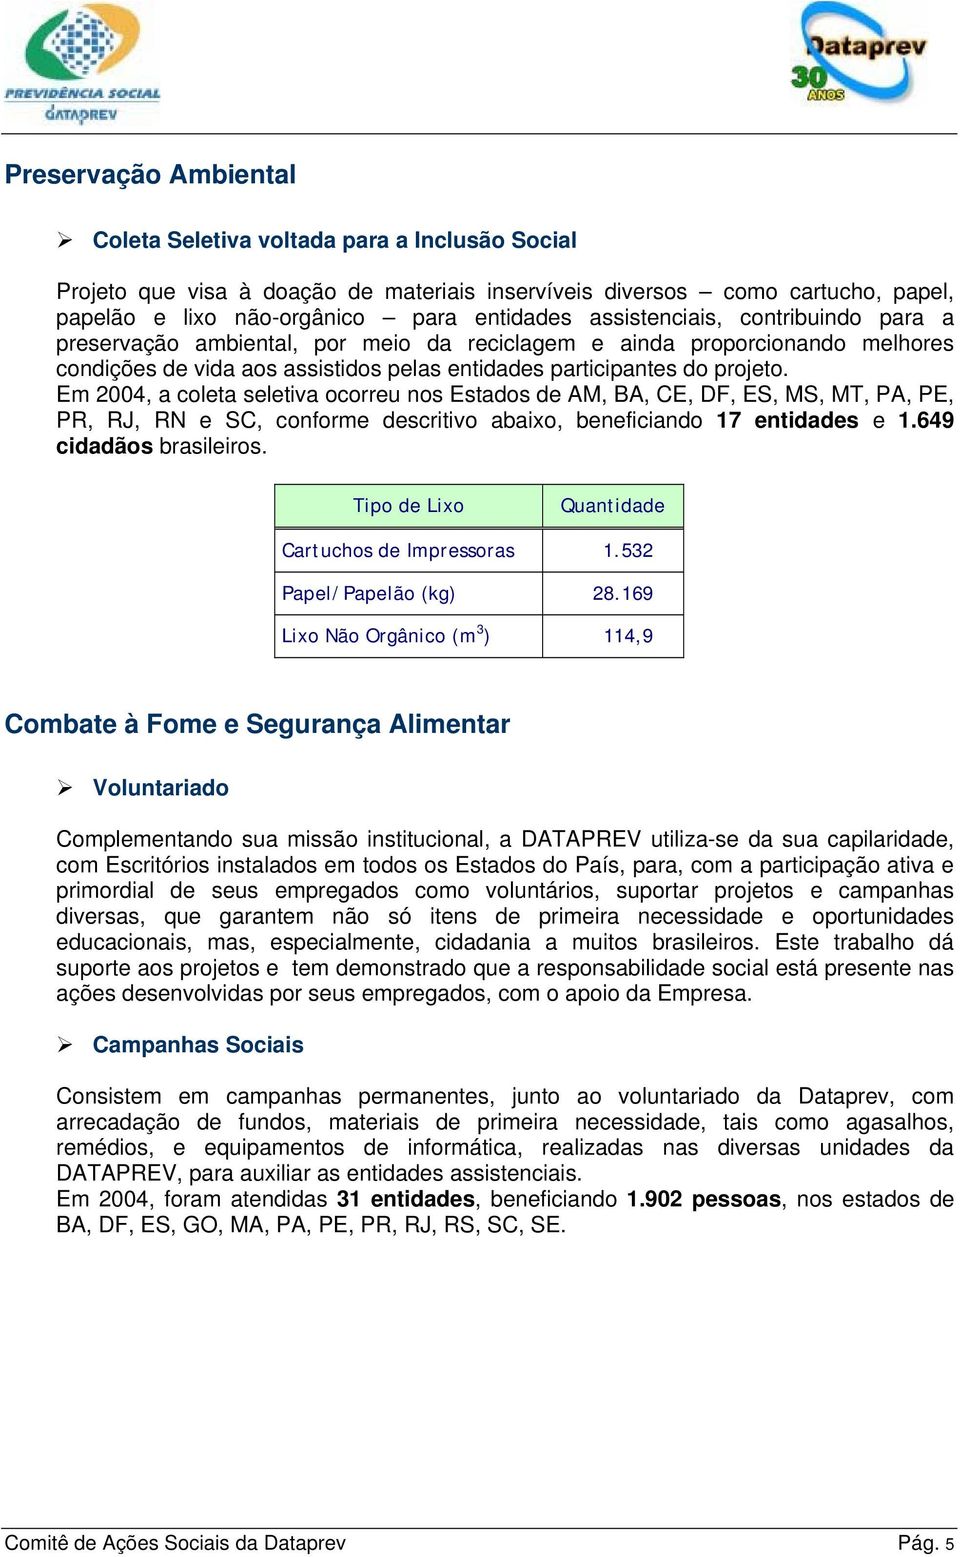 Em 2004, a coleta seletiva ocorreu nos Estados de AM, BA, CE, DF, ES, MS, MT, PA, PE, PR, RJ, RN e SC, conforme descritivo abaixo, beneficiando 17 entidades e 1.649 cidadãos brasileiros.